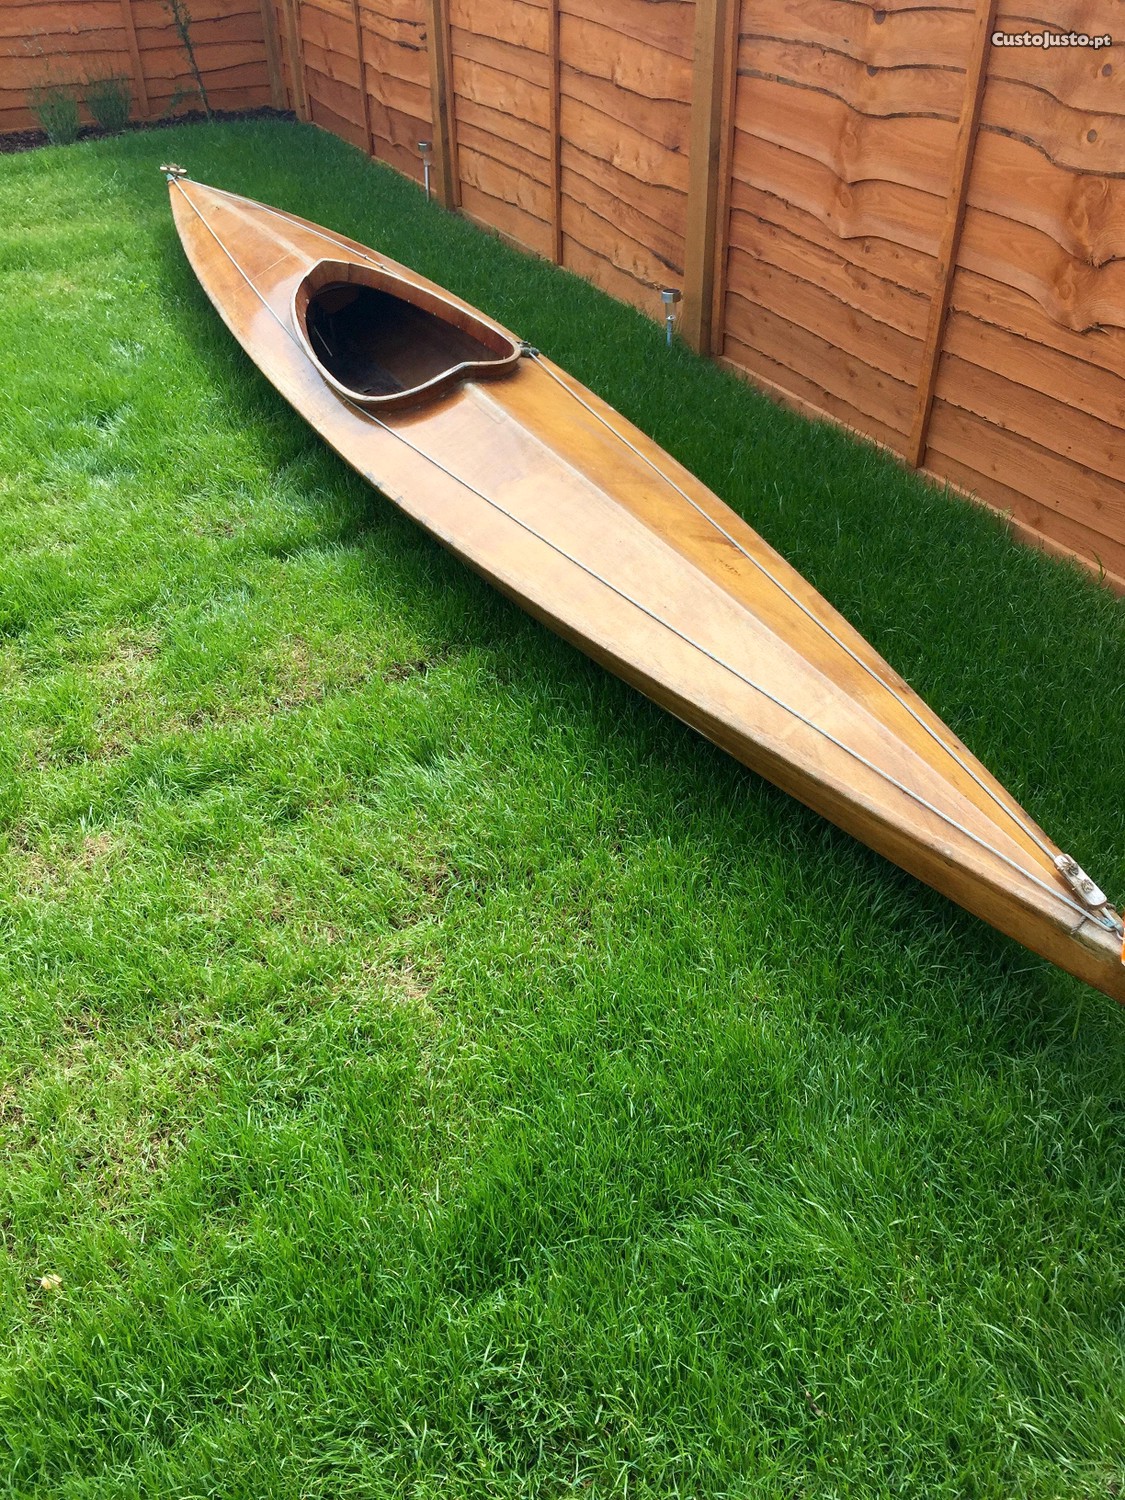 2 kayaks antigos de madeira (anos 50)